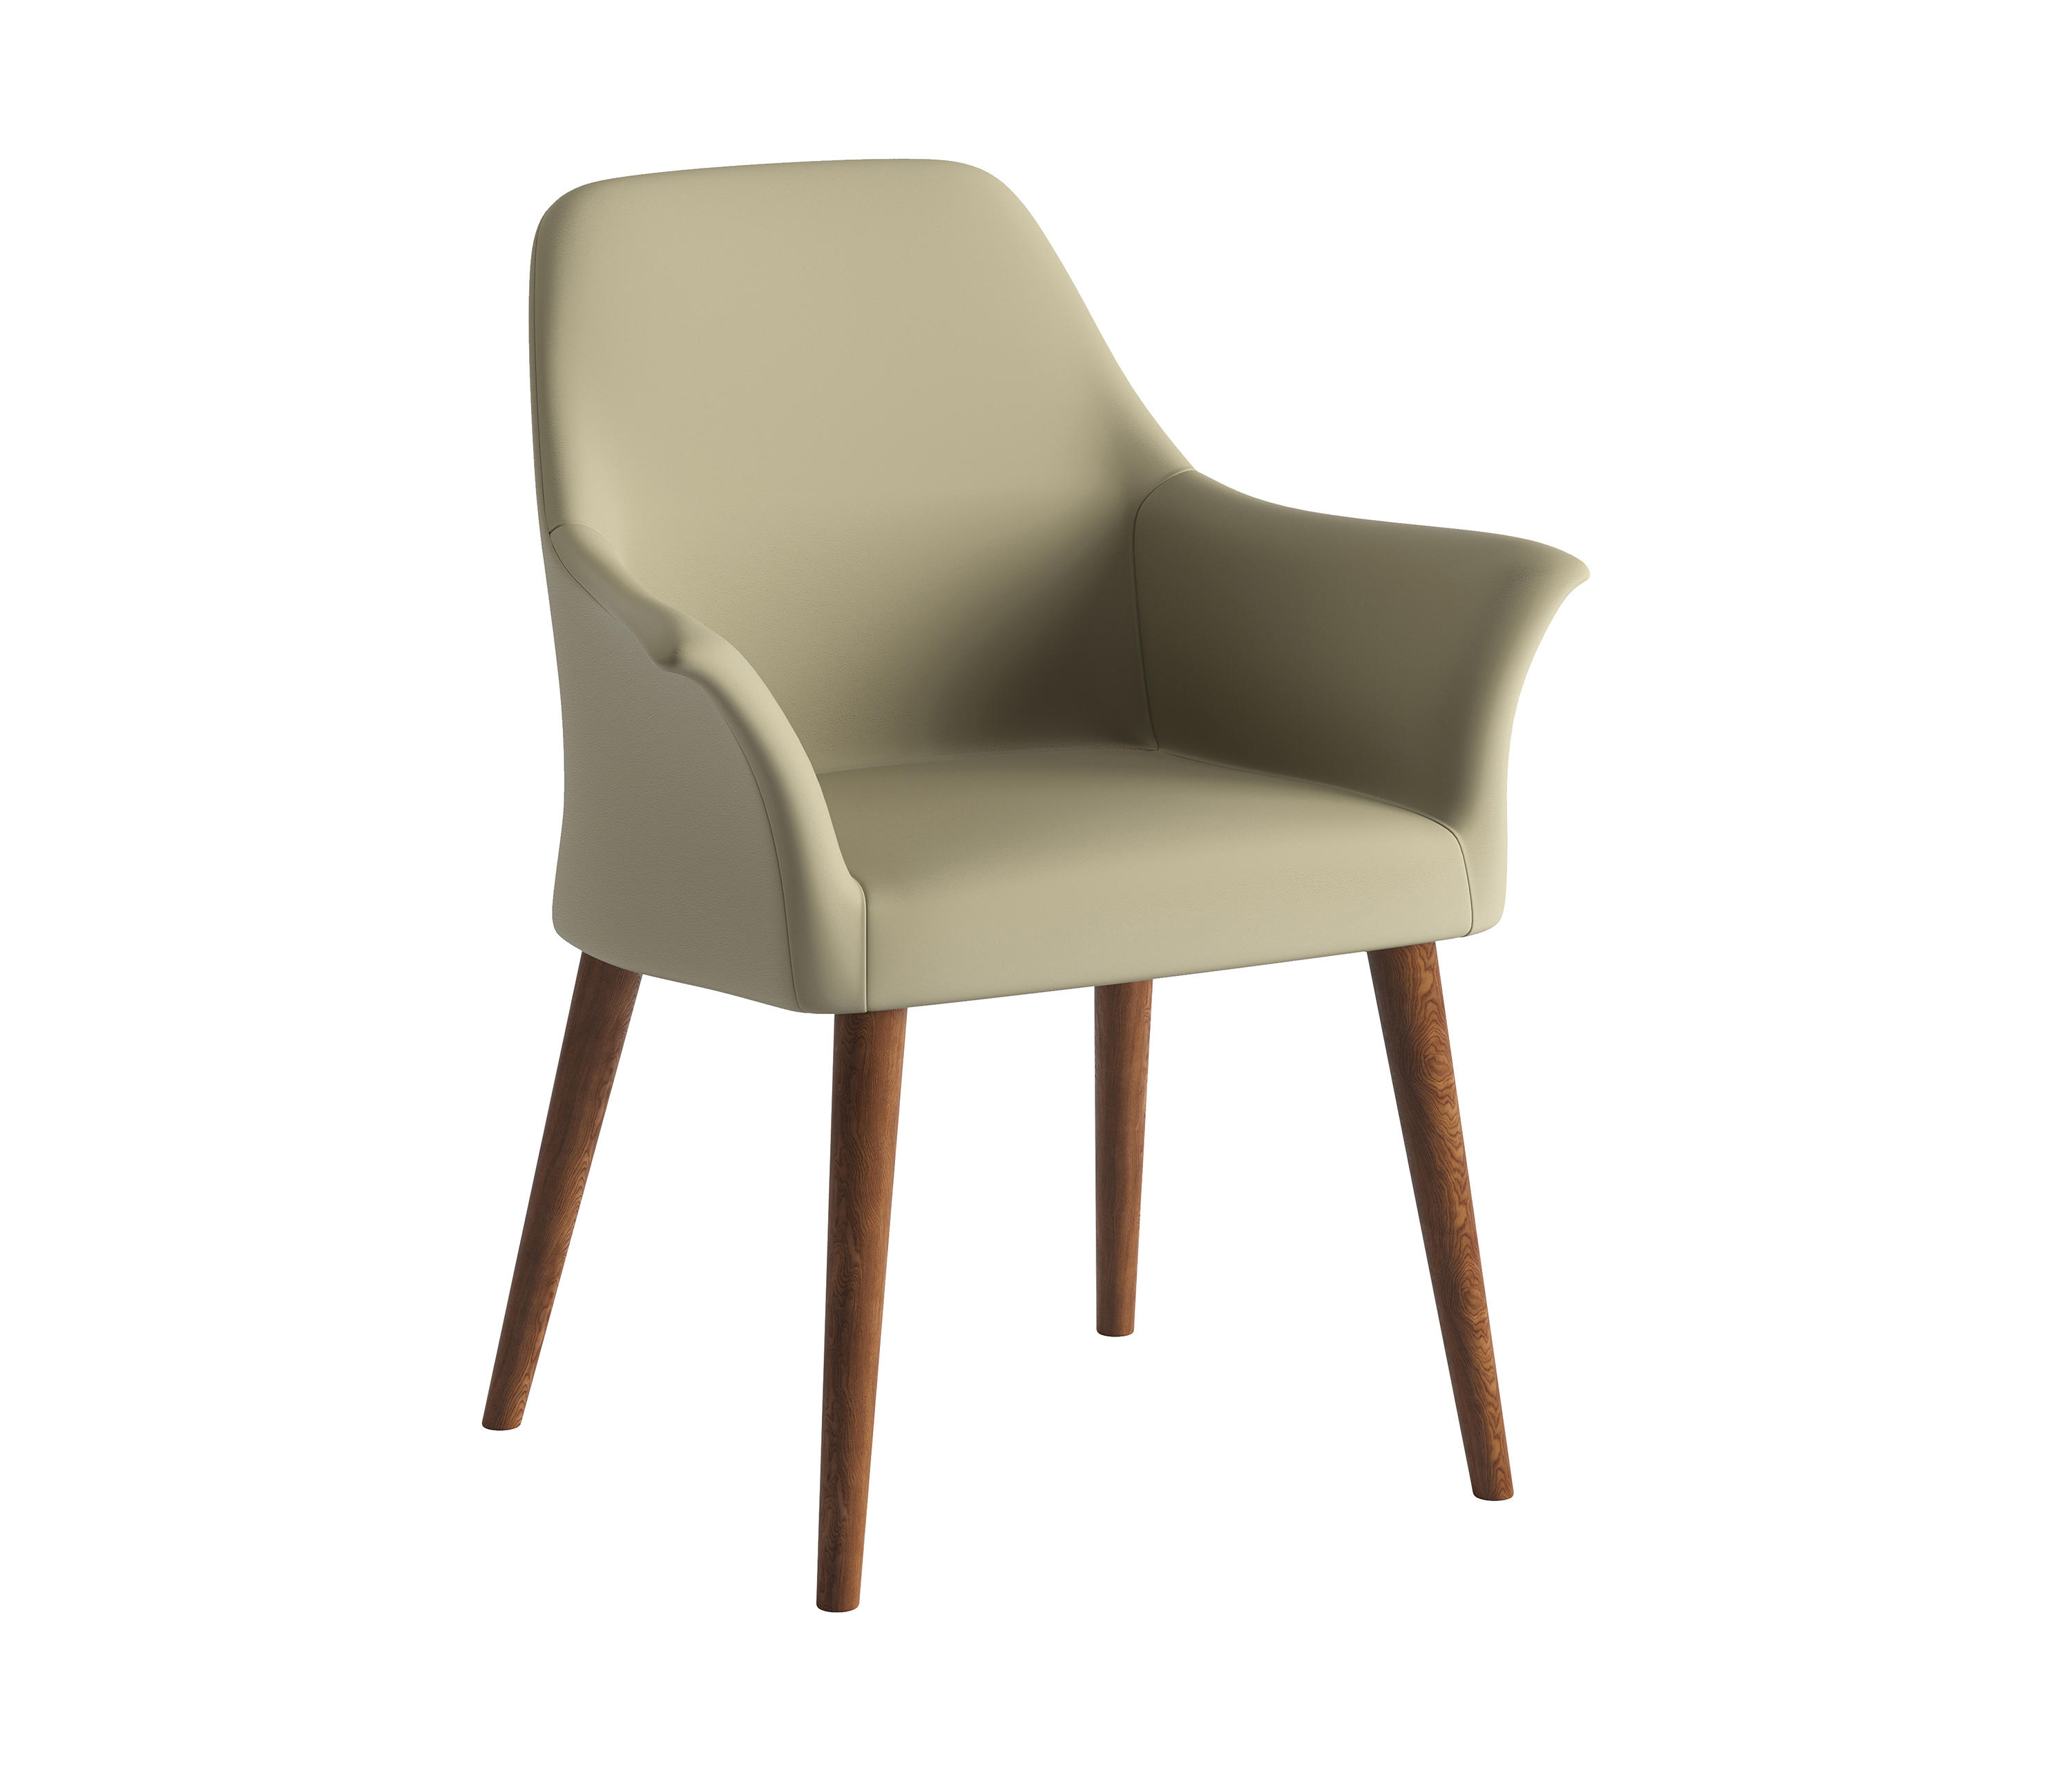 Fold Chair Pro B Arcit18 